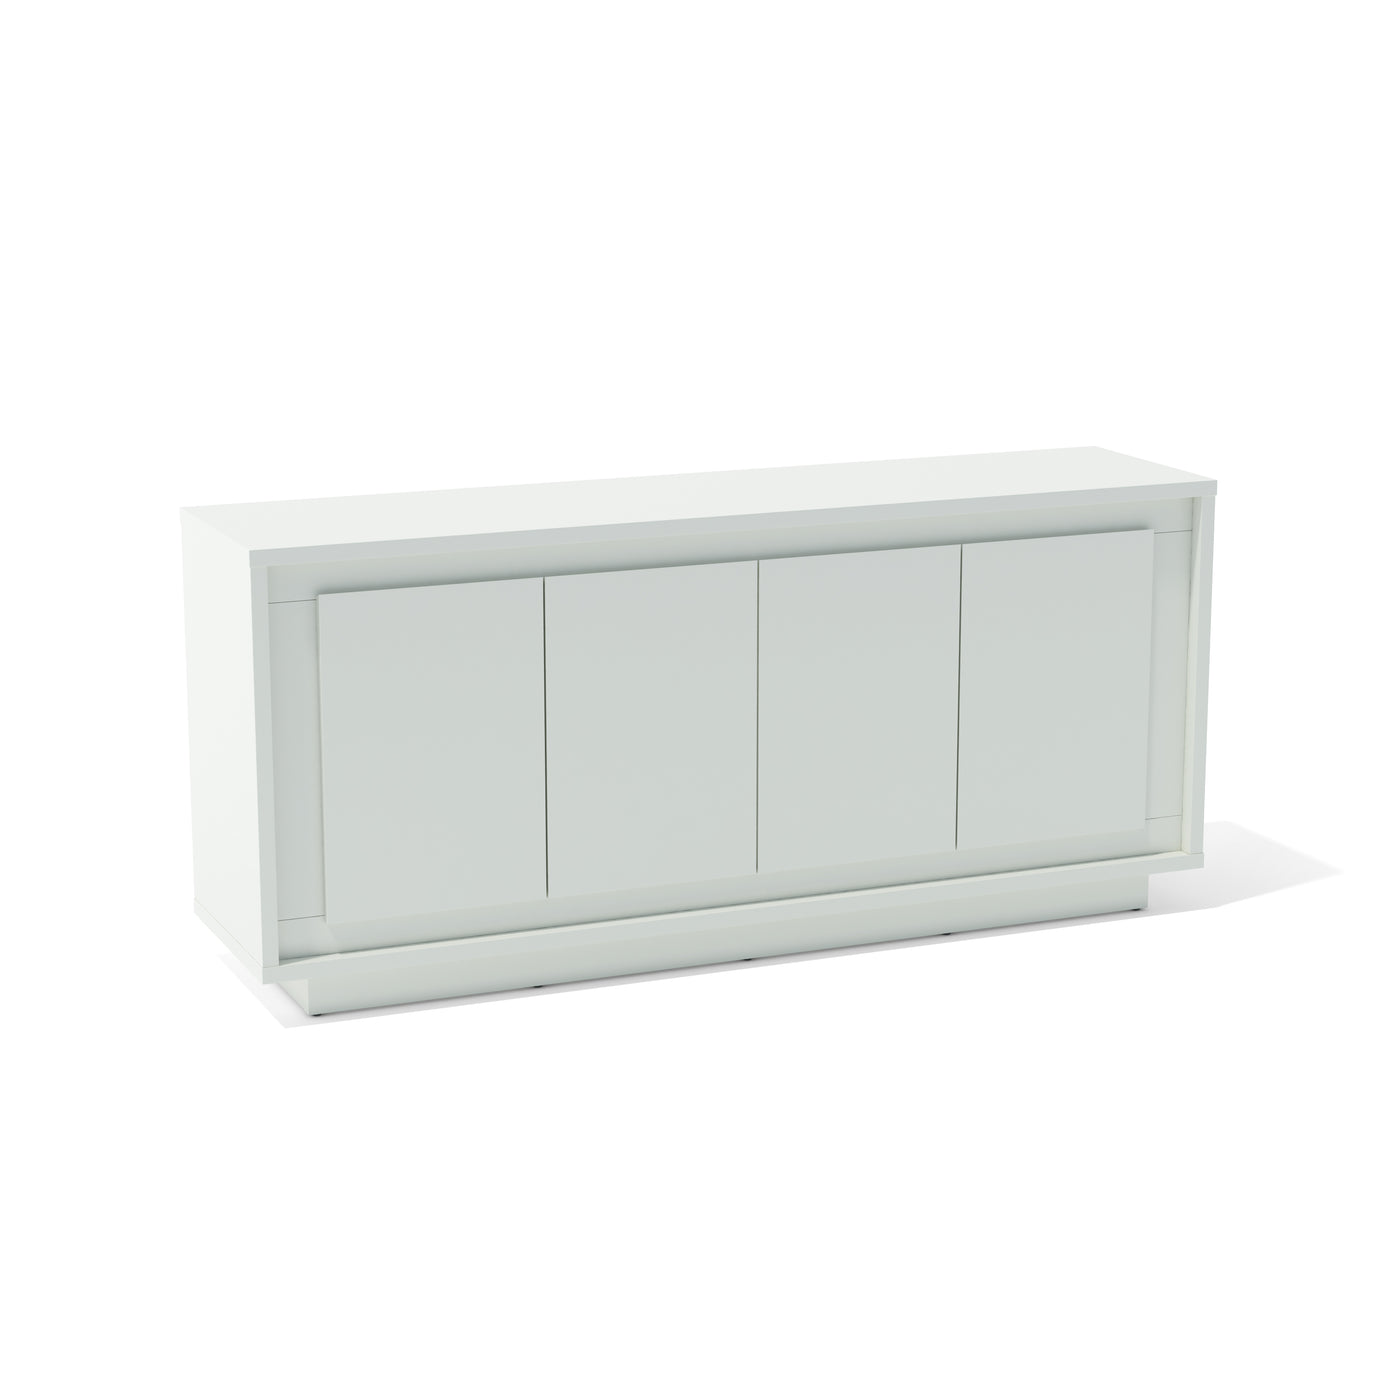 Parragi Sideboard (White)